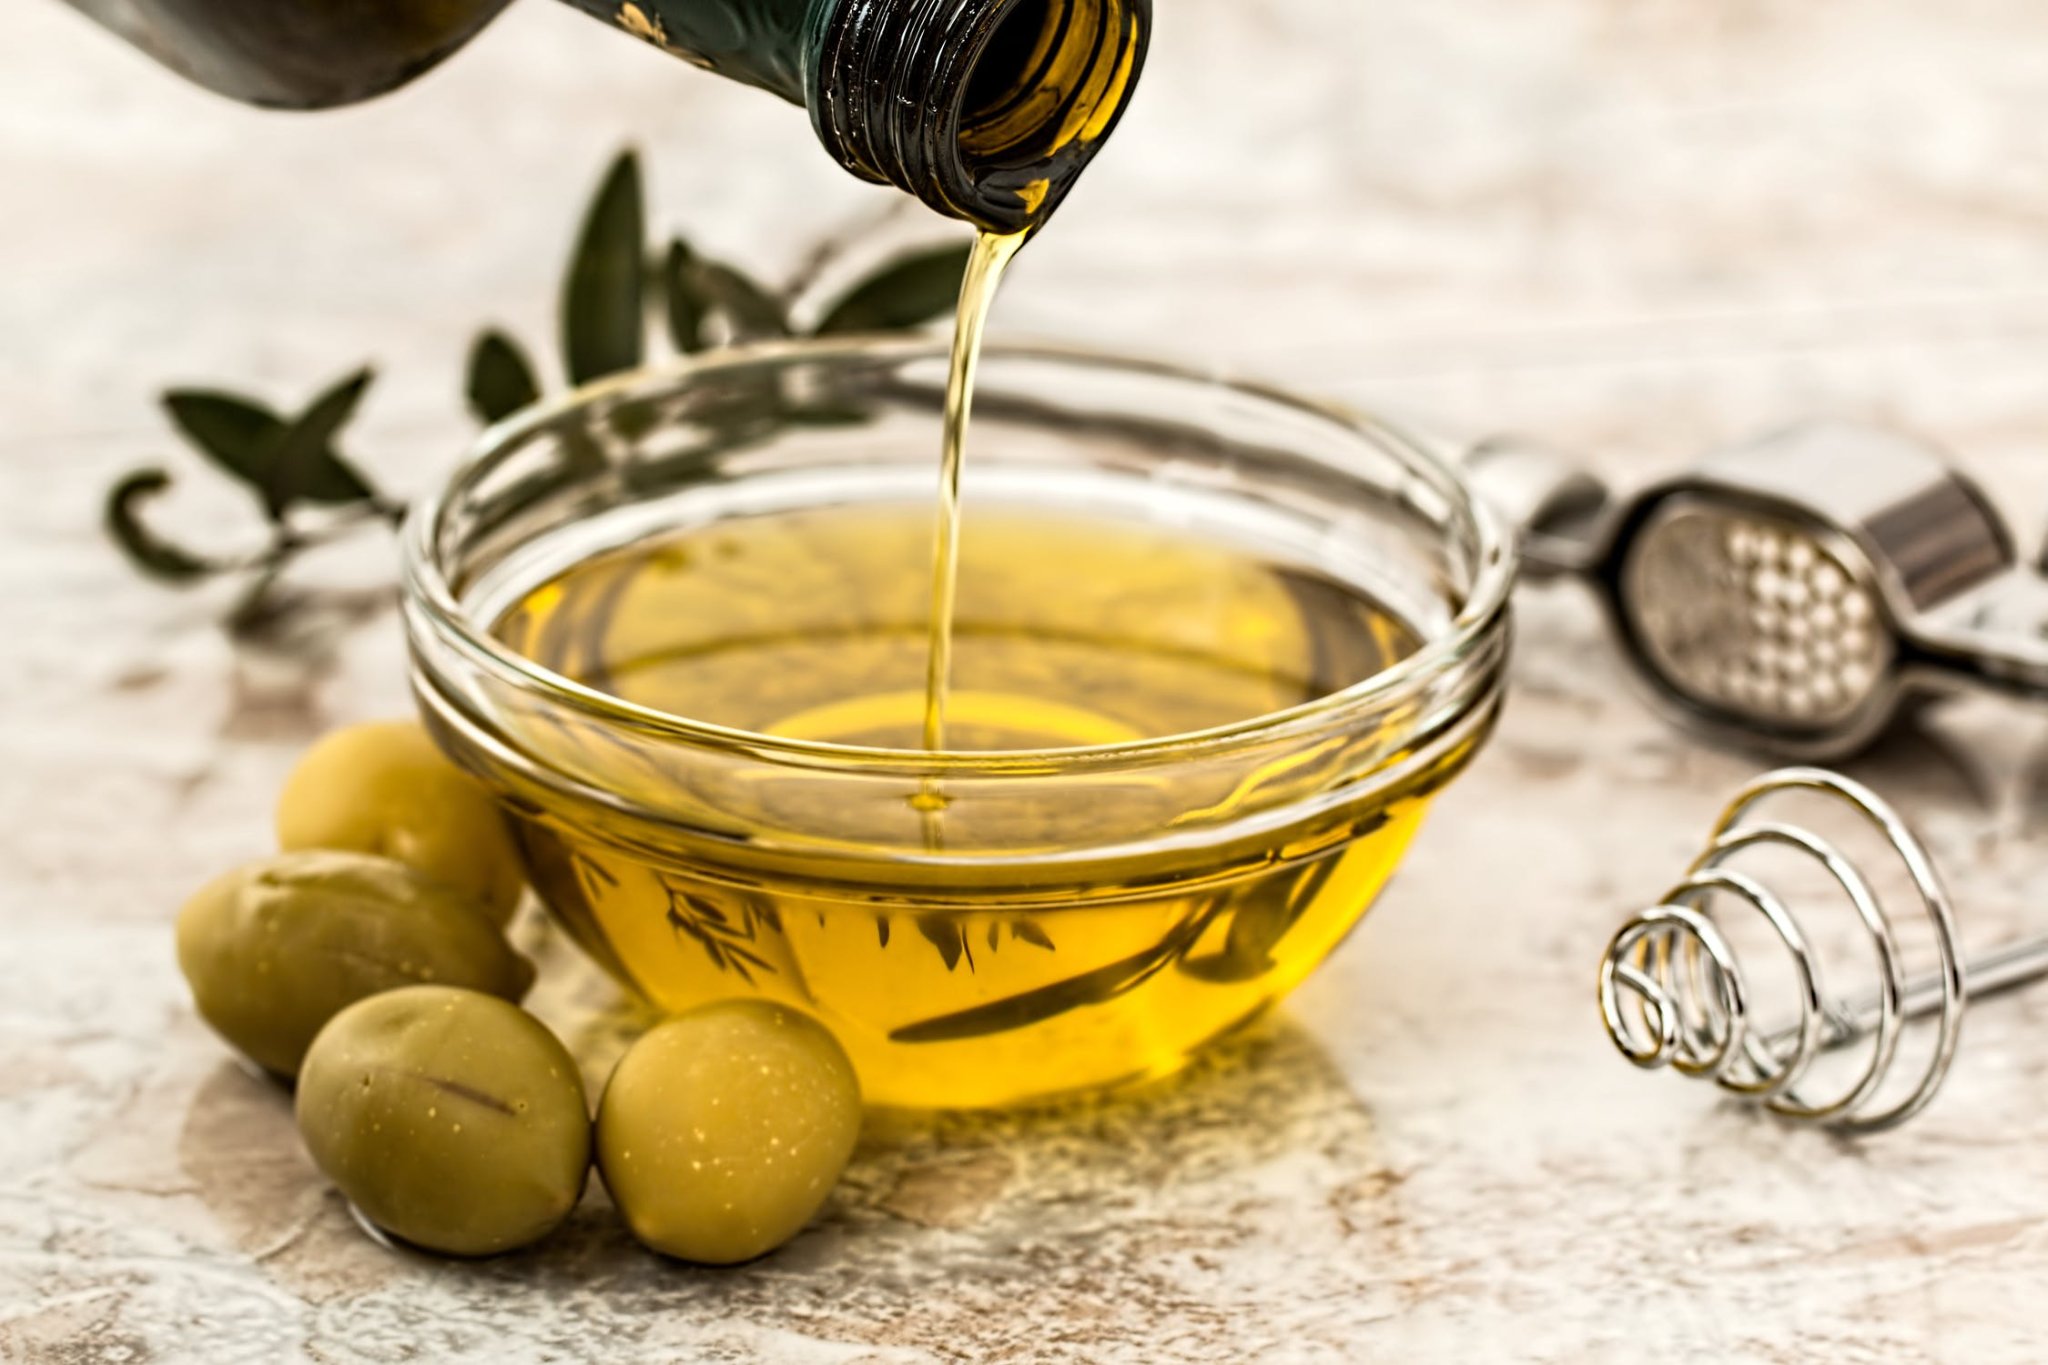 Evoo Marketplace-Olive Oils & Aged Balsamic Vinegars-Denver